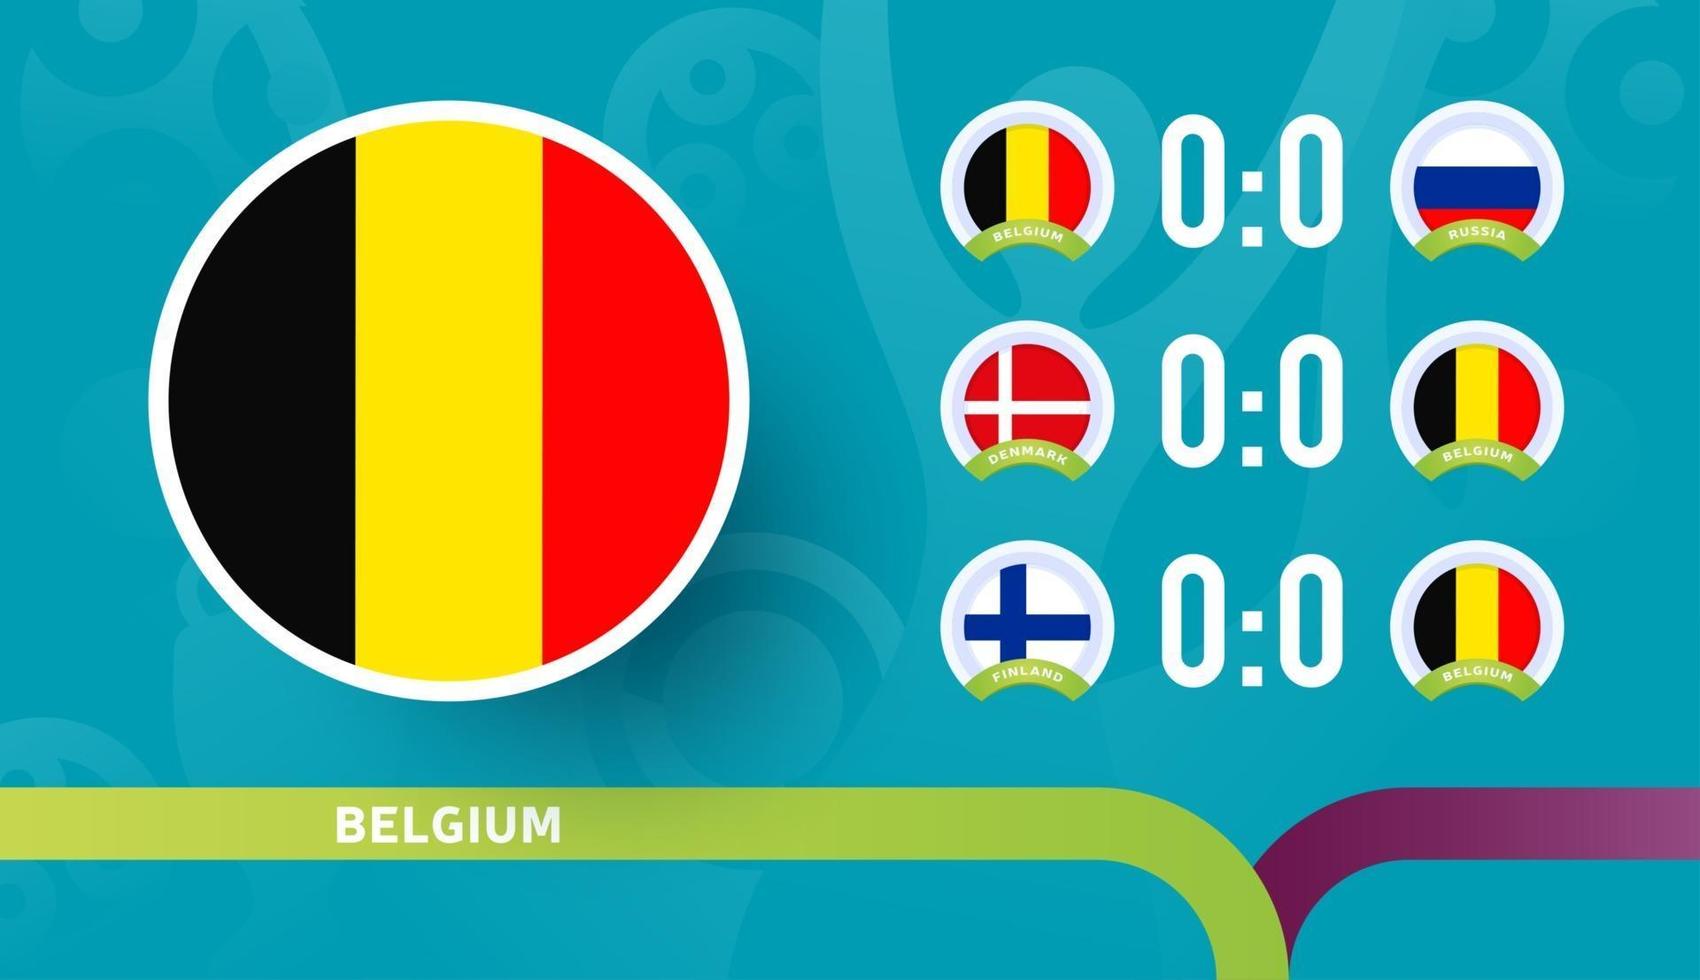 Die belgische Nationalmannschaft plant Spiele in der Endphase der Fußballmeisterschaft 2020. Vektorgrafik von Fußballspielen 2020. vektor